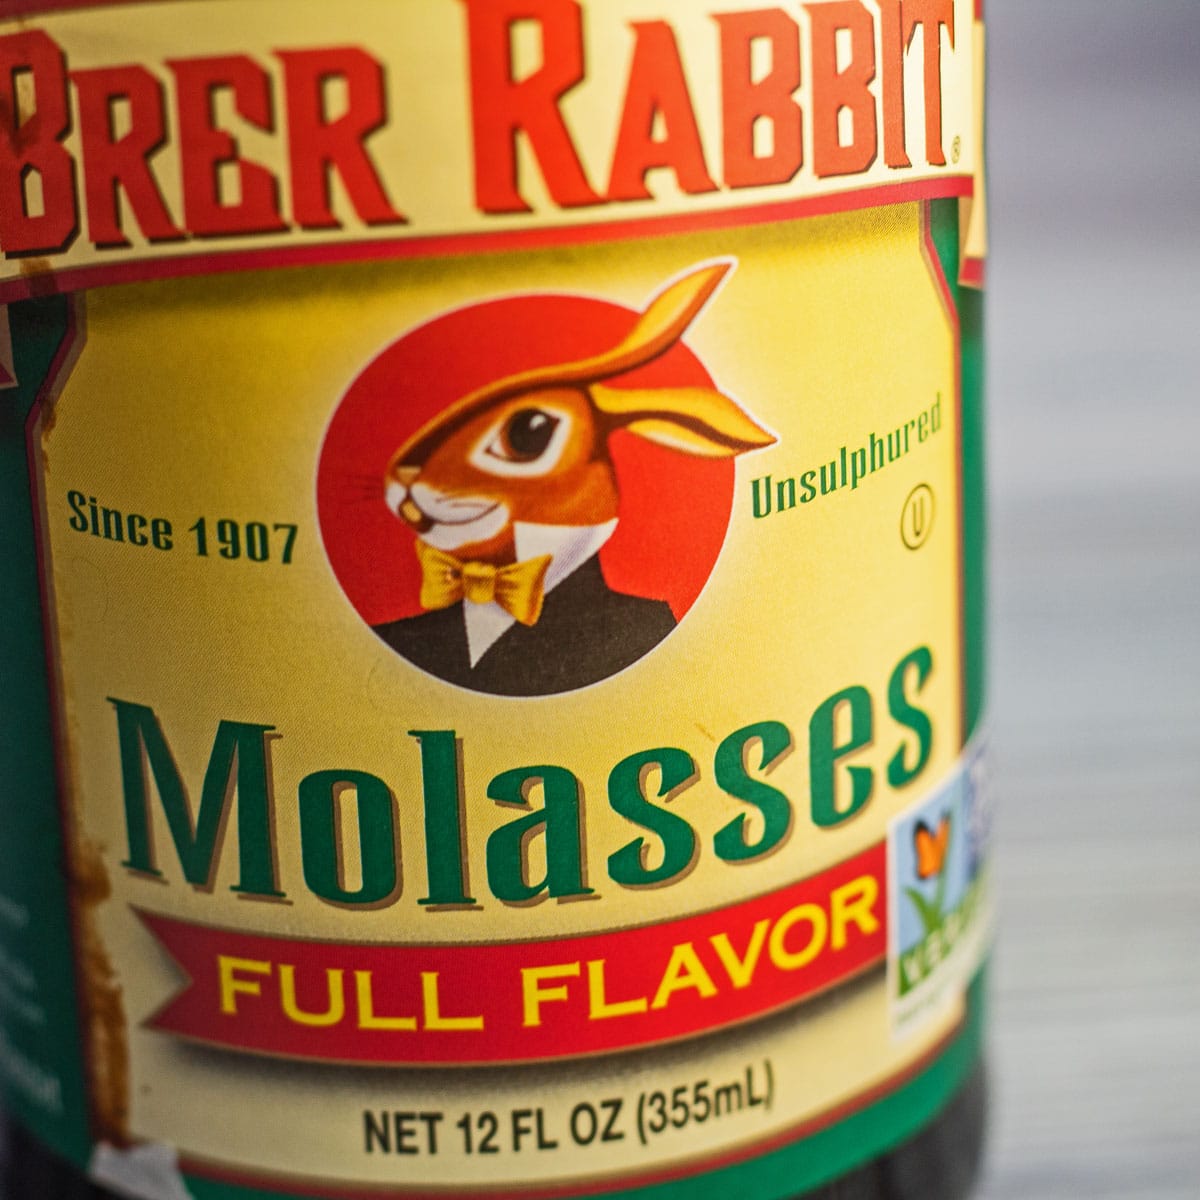 Pengganti molase dalam memasak dan memanggang gambar close-up dari molase botol.